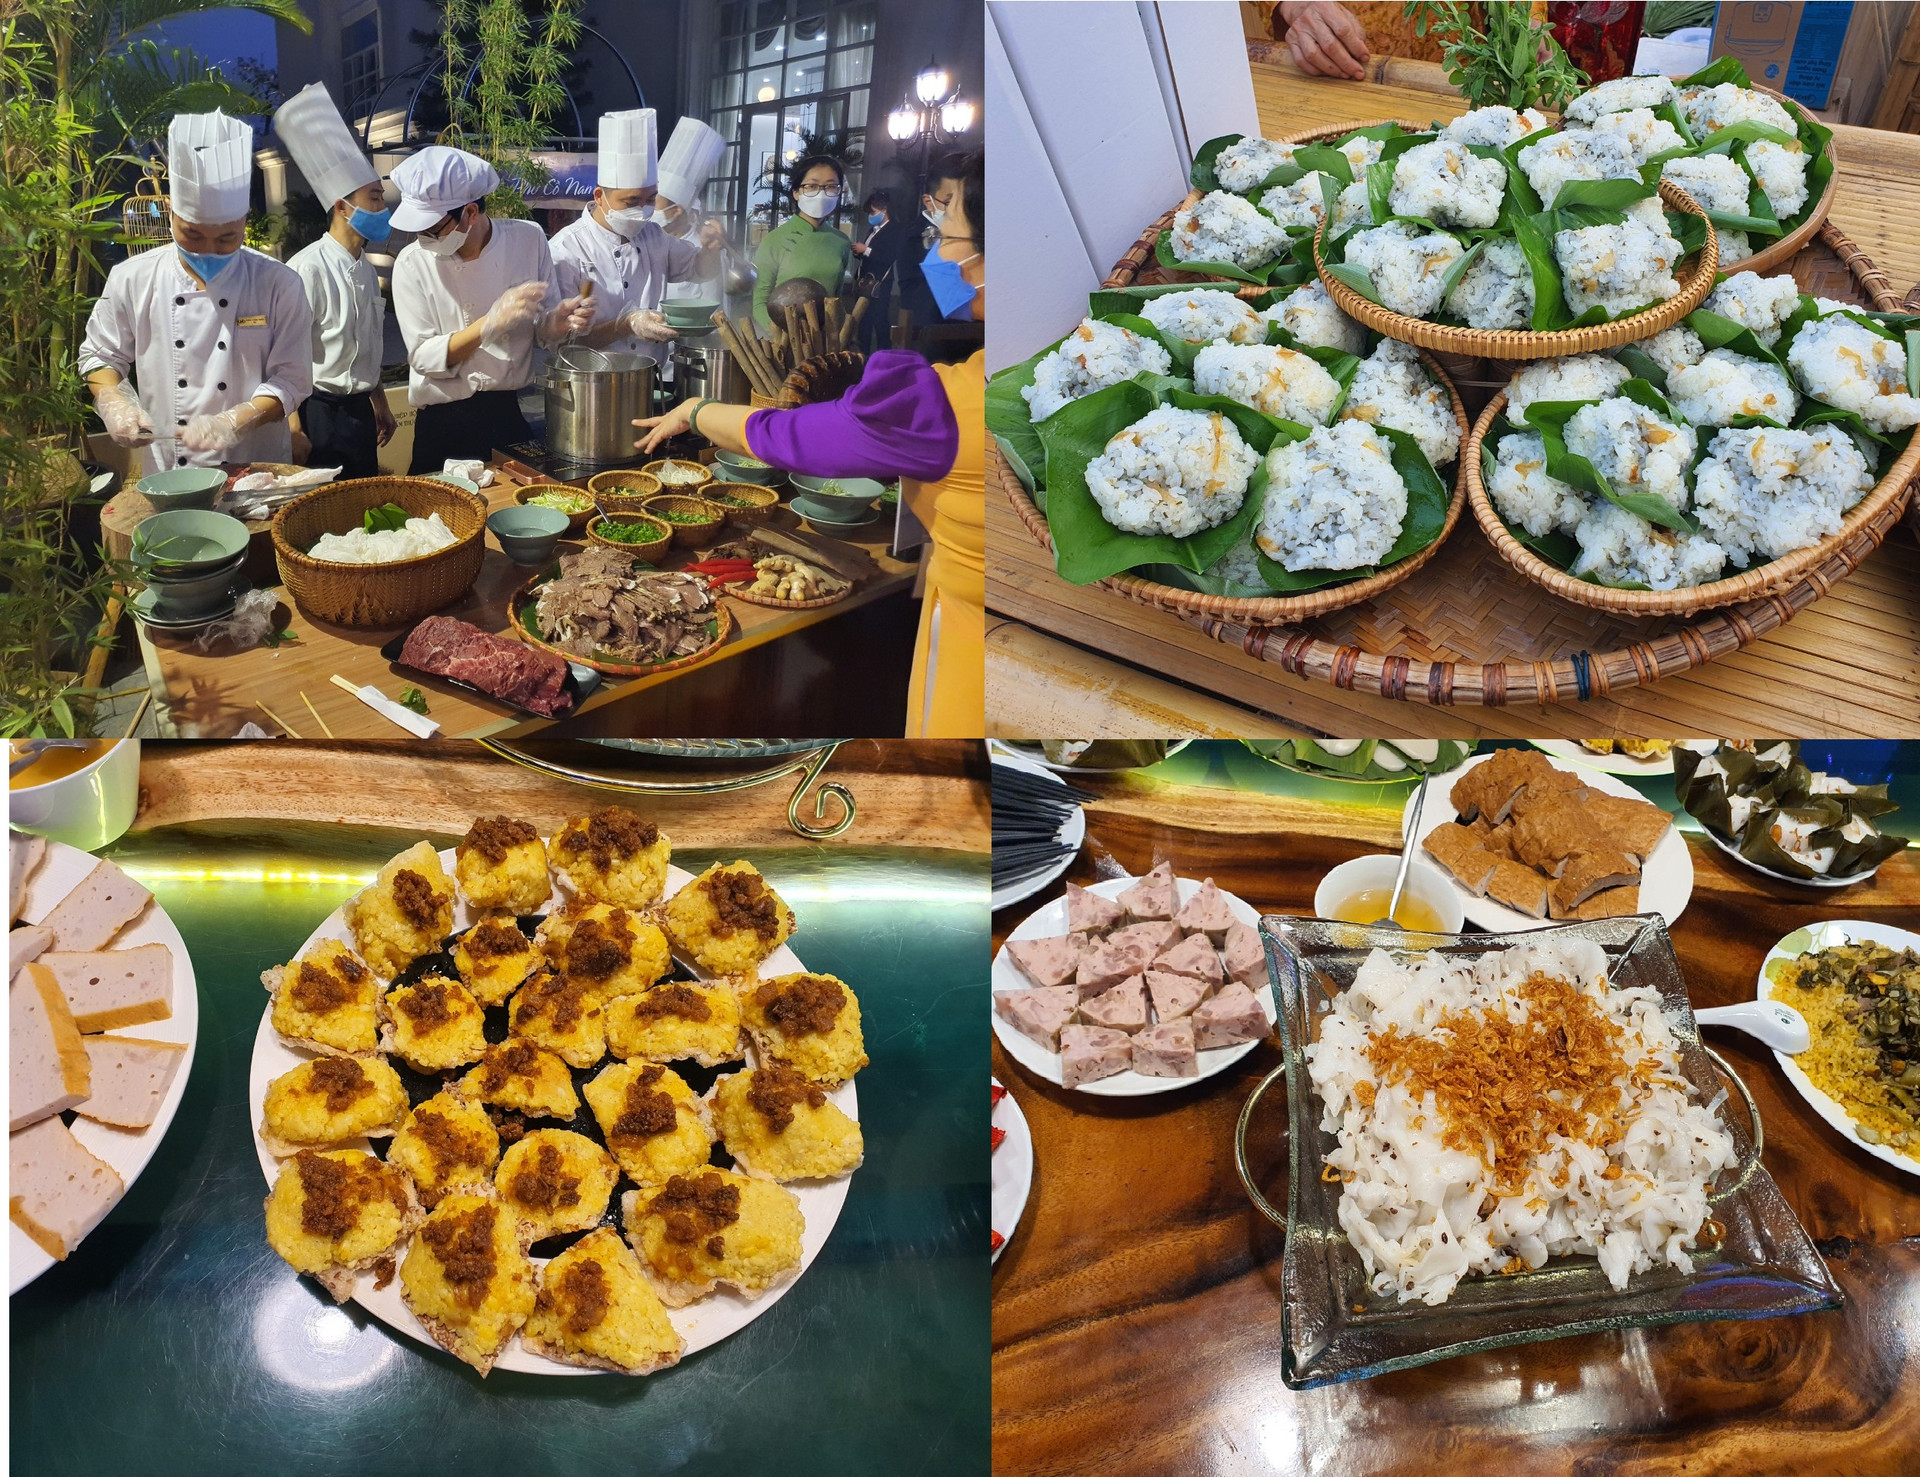 Ngoài rất nhiều các điểm tham quan, di tích lịch sử, văn hóa, Nam Định còn có một nền văn hóa ẩm thực phong phú, đa dạng, đặc trưng, riêng có. Trong ảnh: Phở bò Nam Định, bánh khúc, xôi kê, bánh cuốn… là những món ẩm thực đường phố, bình dân rất phổ biến ở Nam Định.